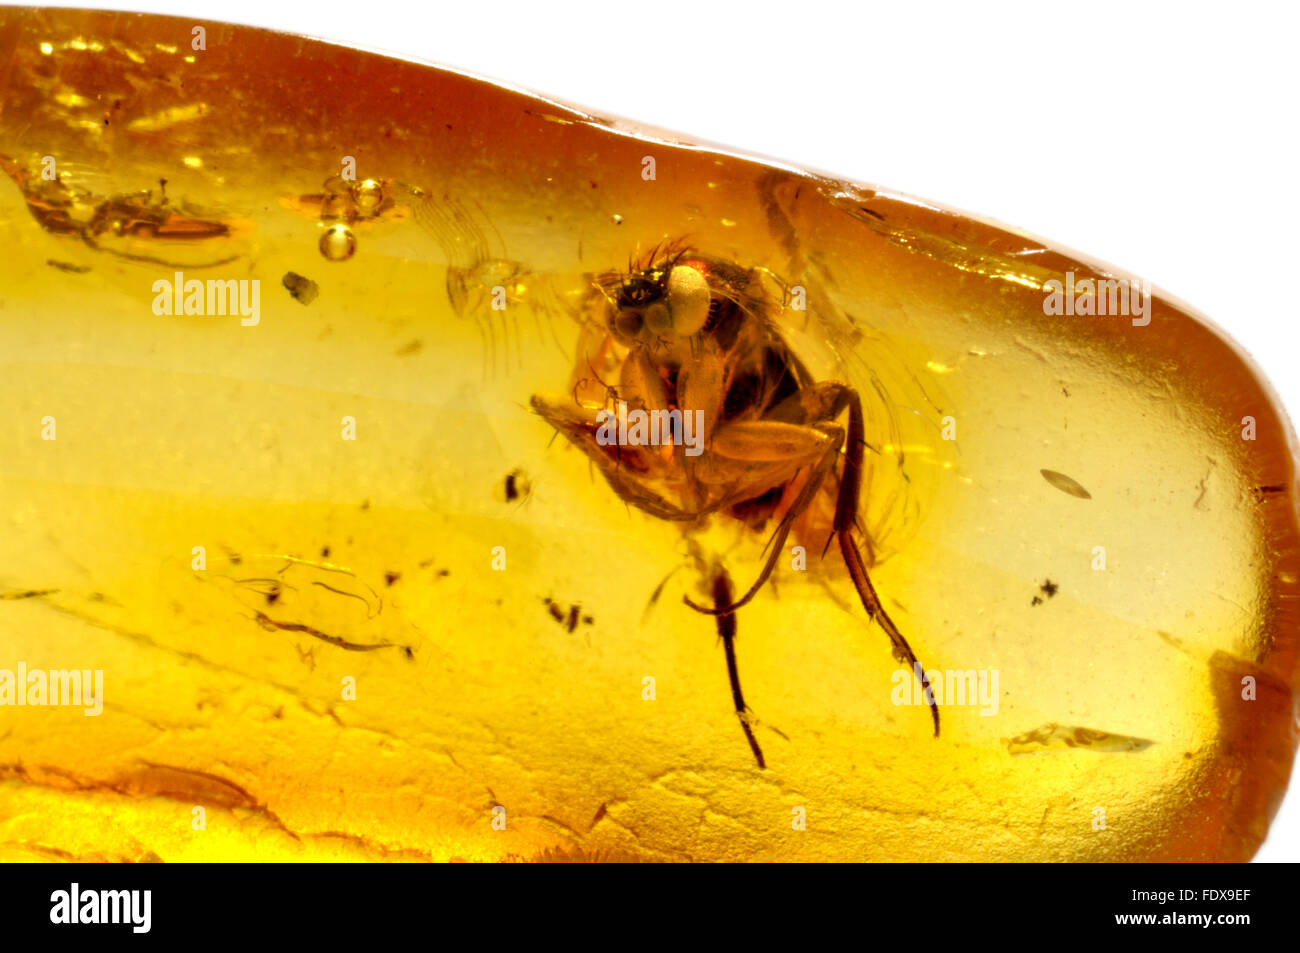 Fly préhistoriques conservés dans l'ambre de la baltique (45-55 millions d'années) fly 4-5mm de long Banque D'Images